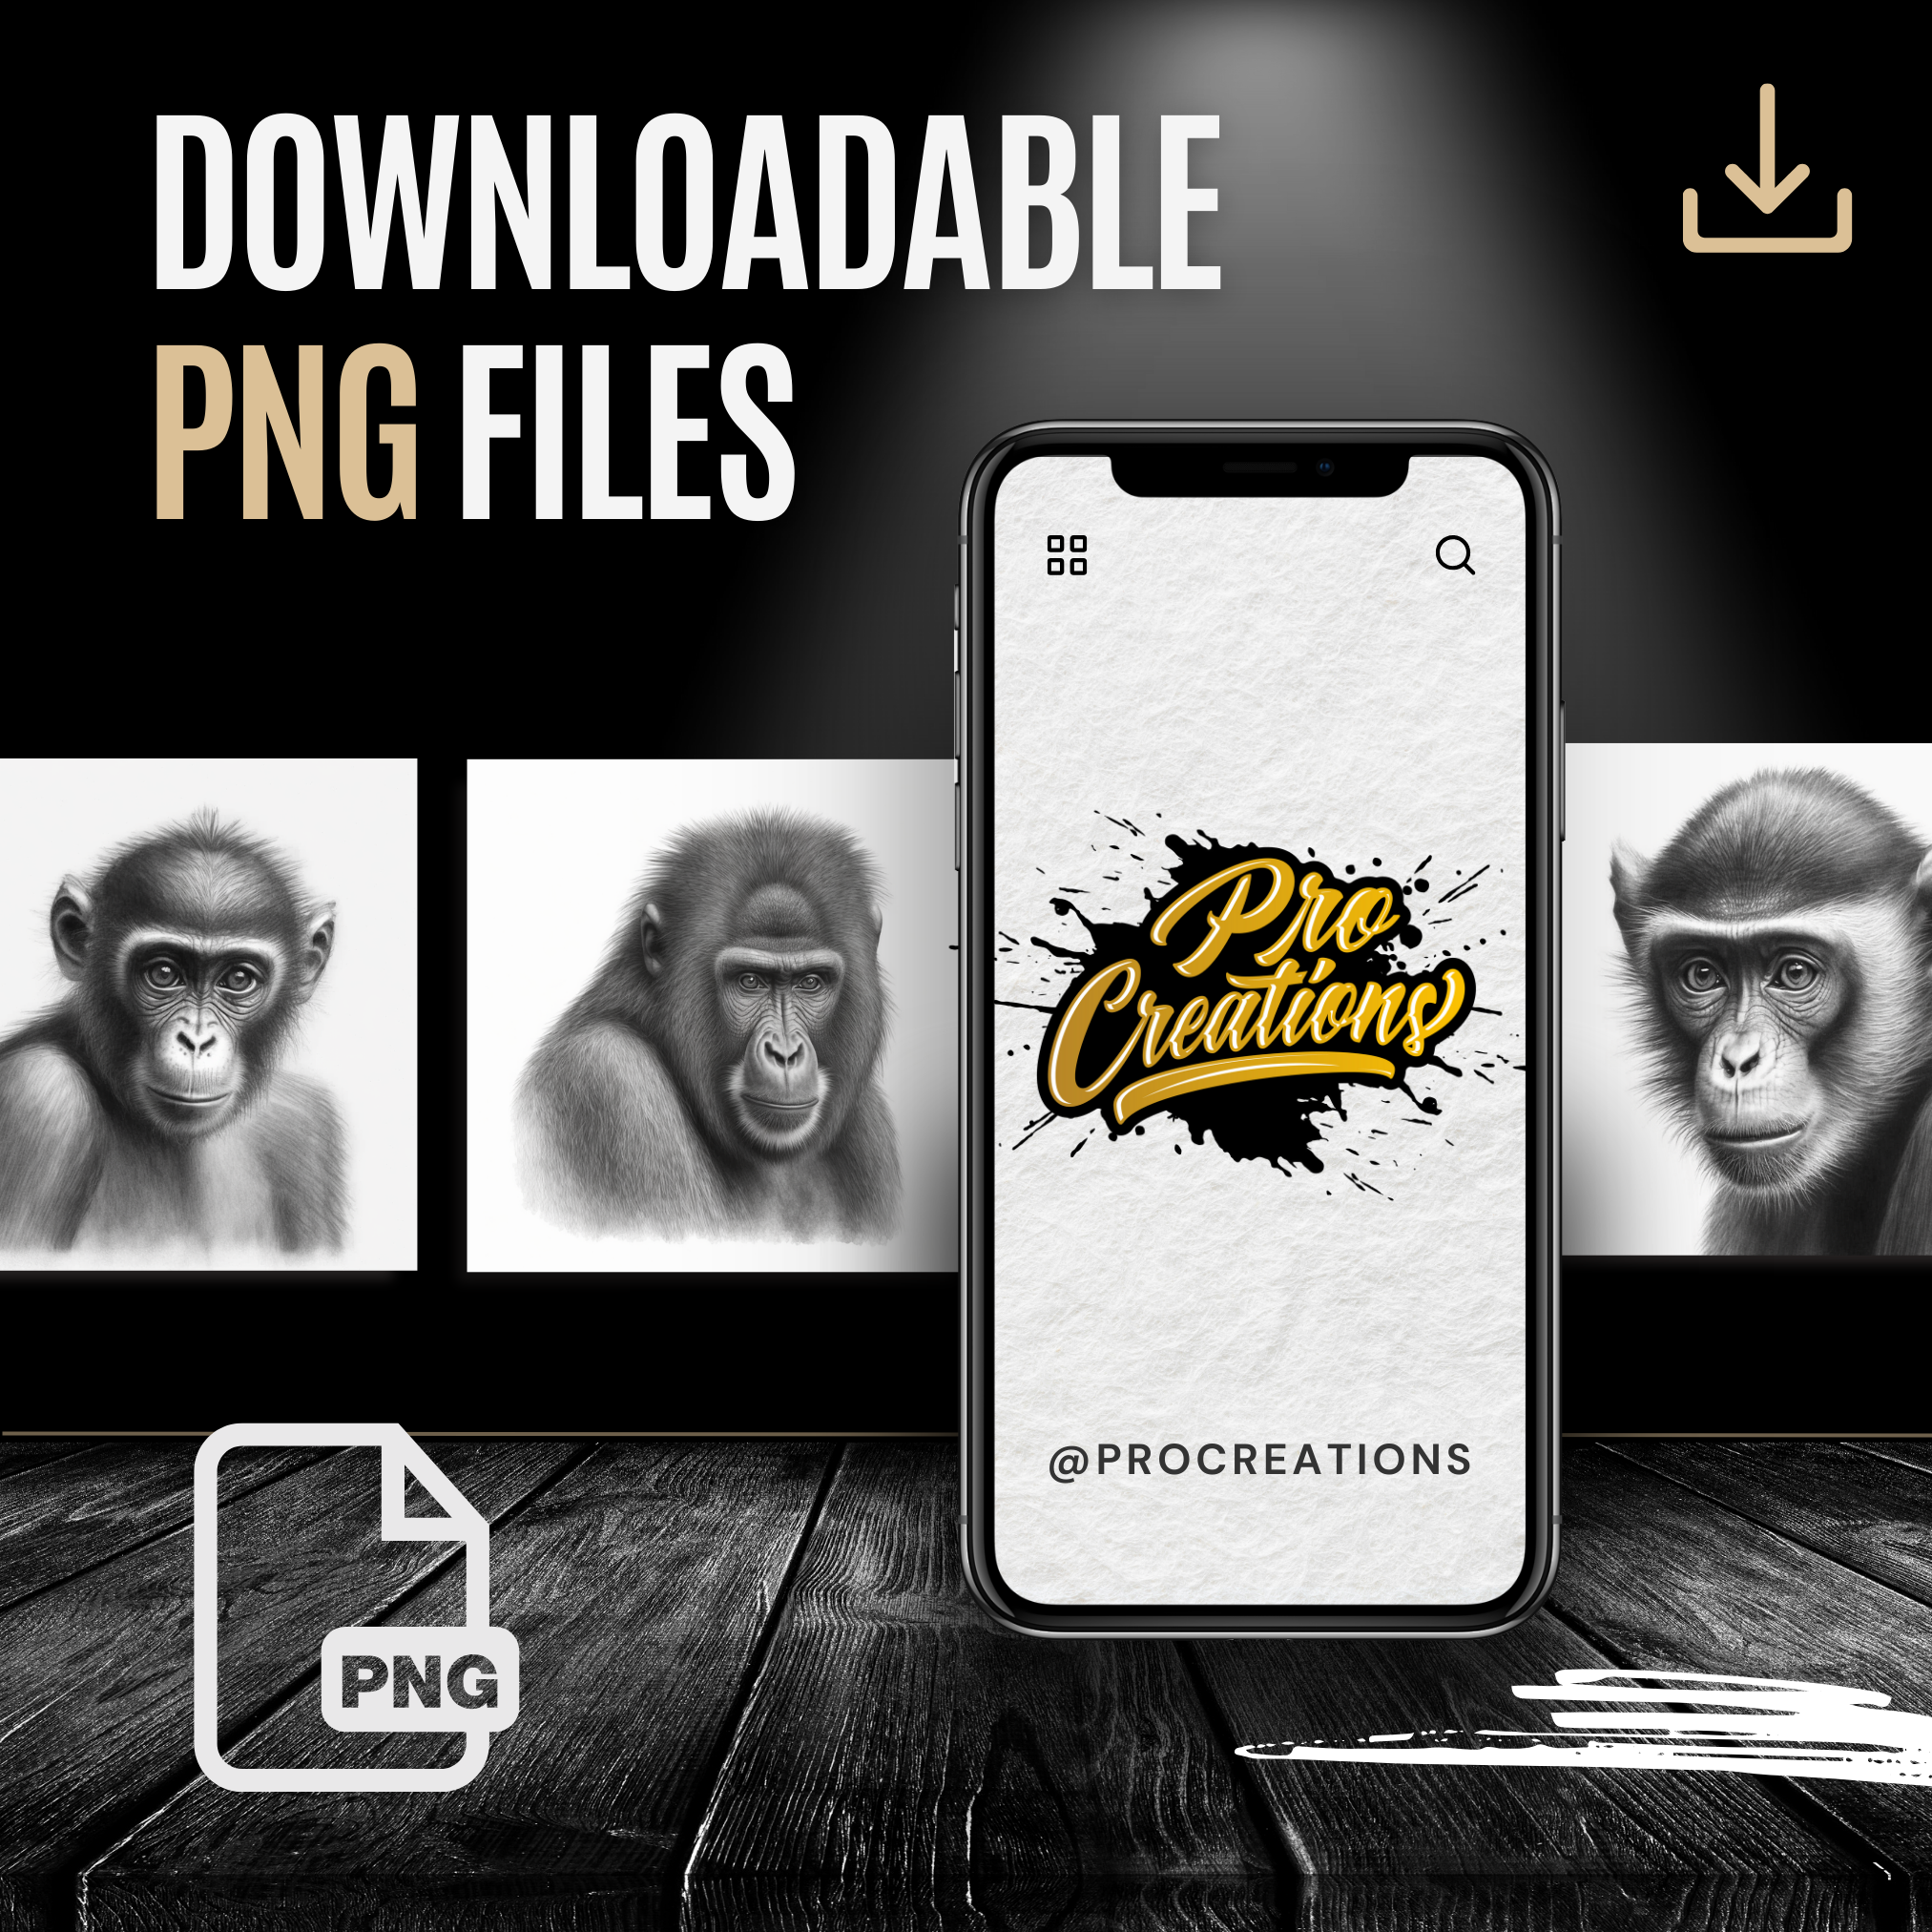 Primates Digital Reference Design Collection: 100 Procreate & Sketchbook Images